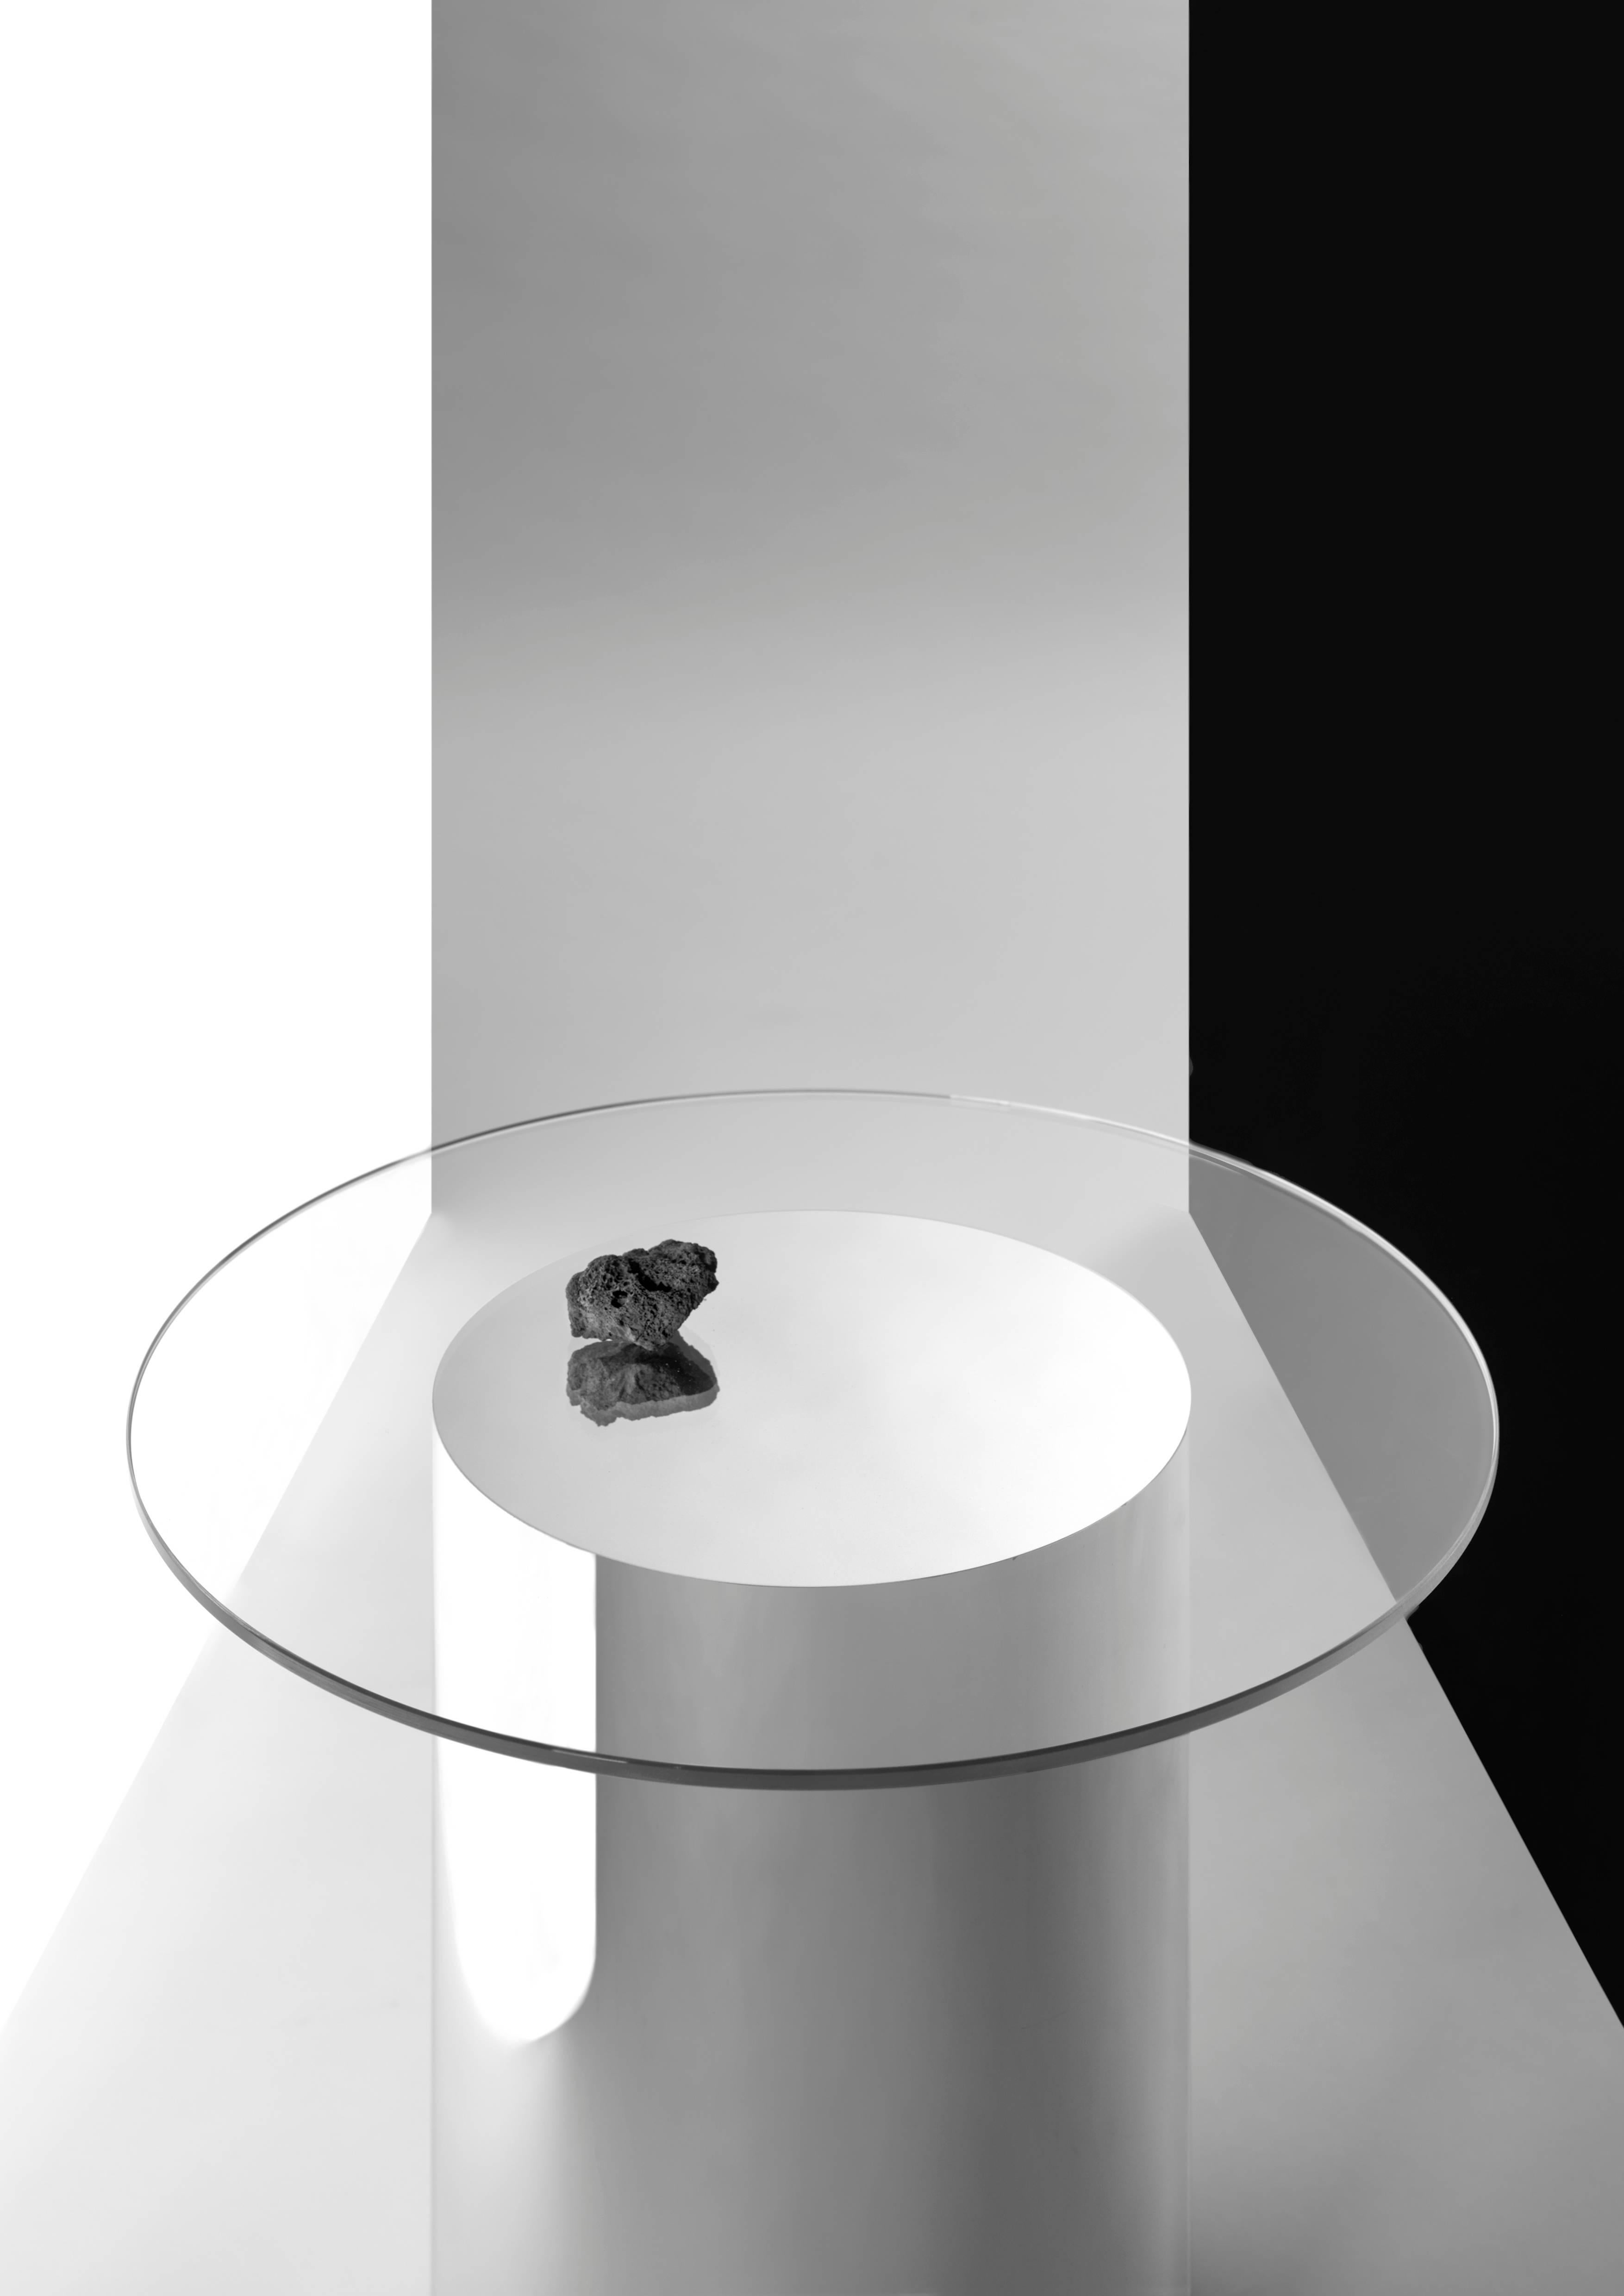 Satz von zwei Beistelltischen Modell '2001', entworfen von Ramon Úbeda und Otto Canalda.
Hergestellt von Bd (Spanien).

Die Beistelltische 2001 bestehen aus ultraklarem Glas und einer verspiegelten Pyrex-Röhre, die keine Fugen aufweist. Der